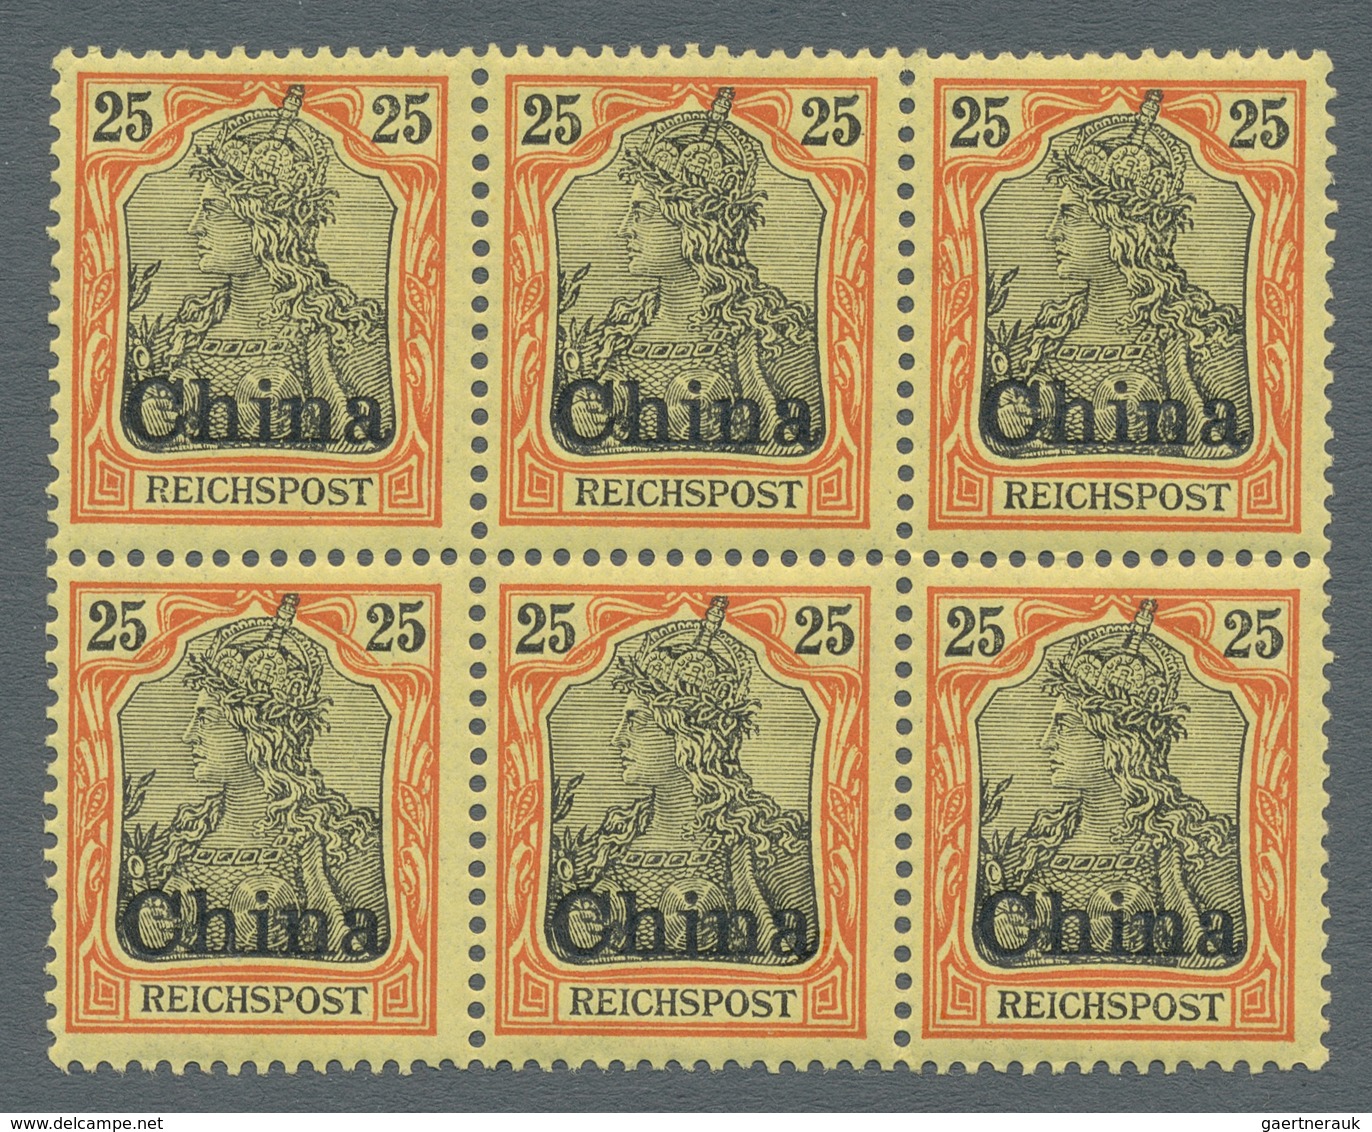 Deutsche Post In China: 1901, 25 Pfg. Germania Reichspost Mit Aufdruck CHINA Als Sechserblock (mittl - Deutsche Post In China